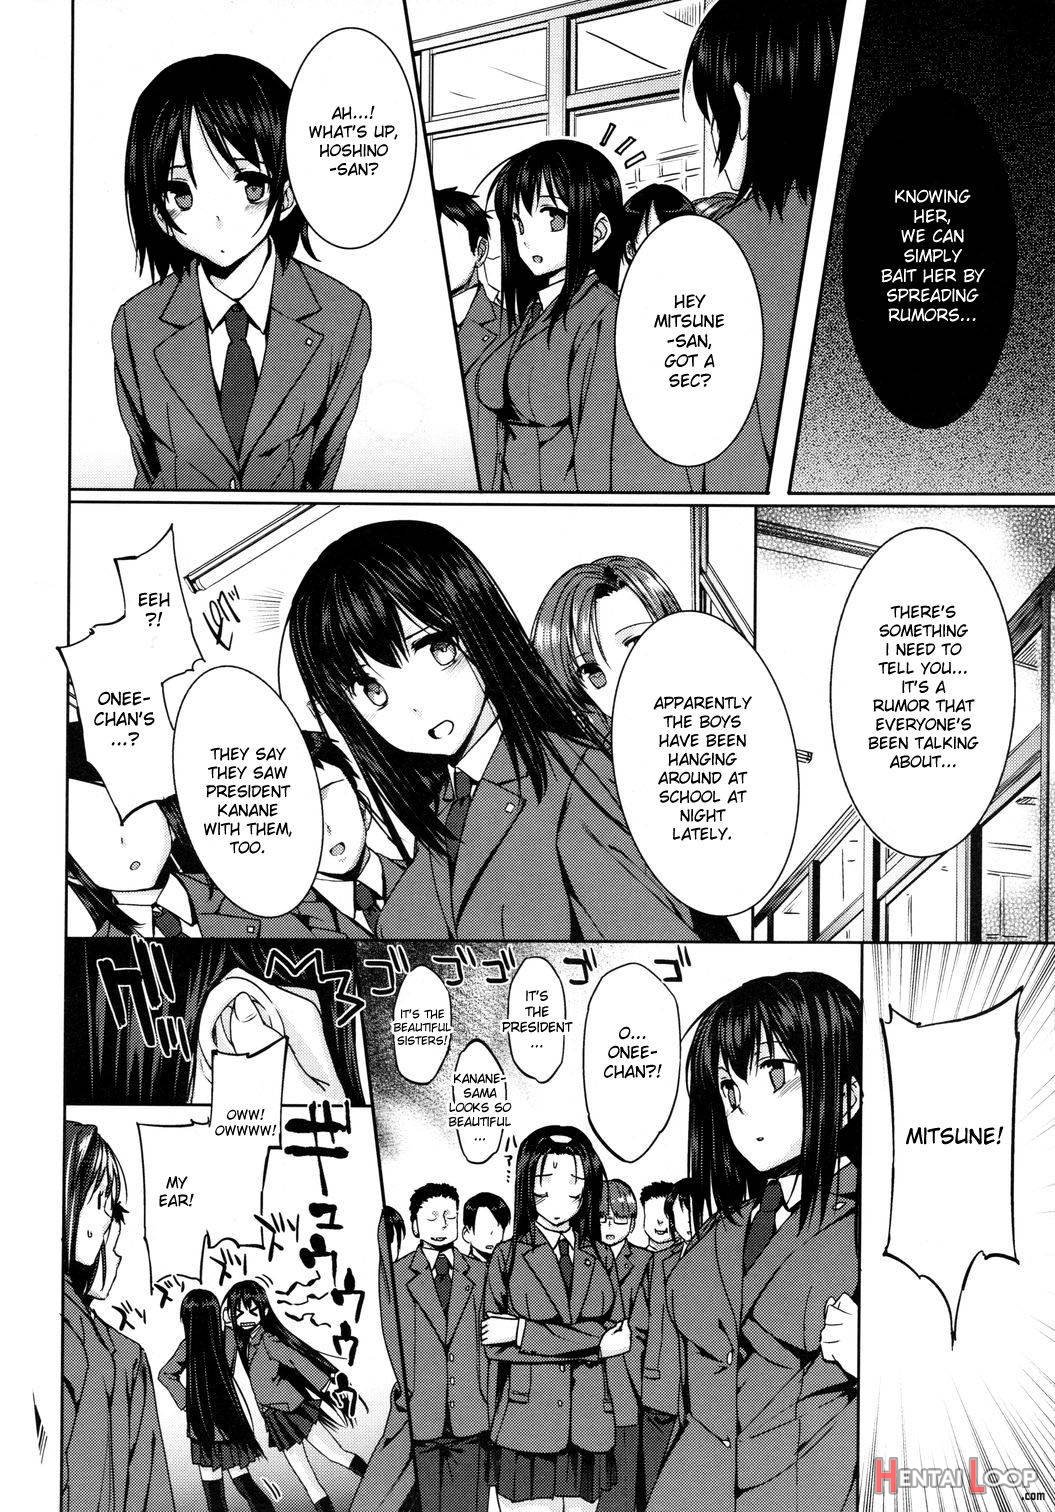 Kanane kaichou to Mitsune iinchou page 4